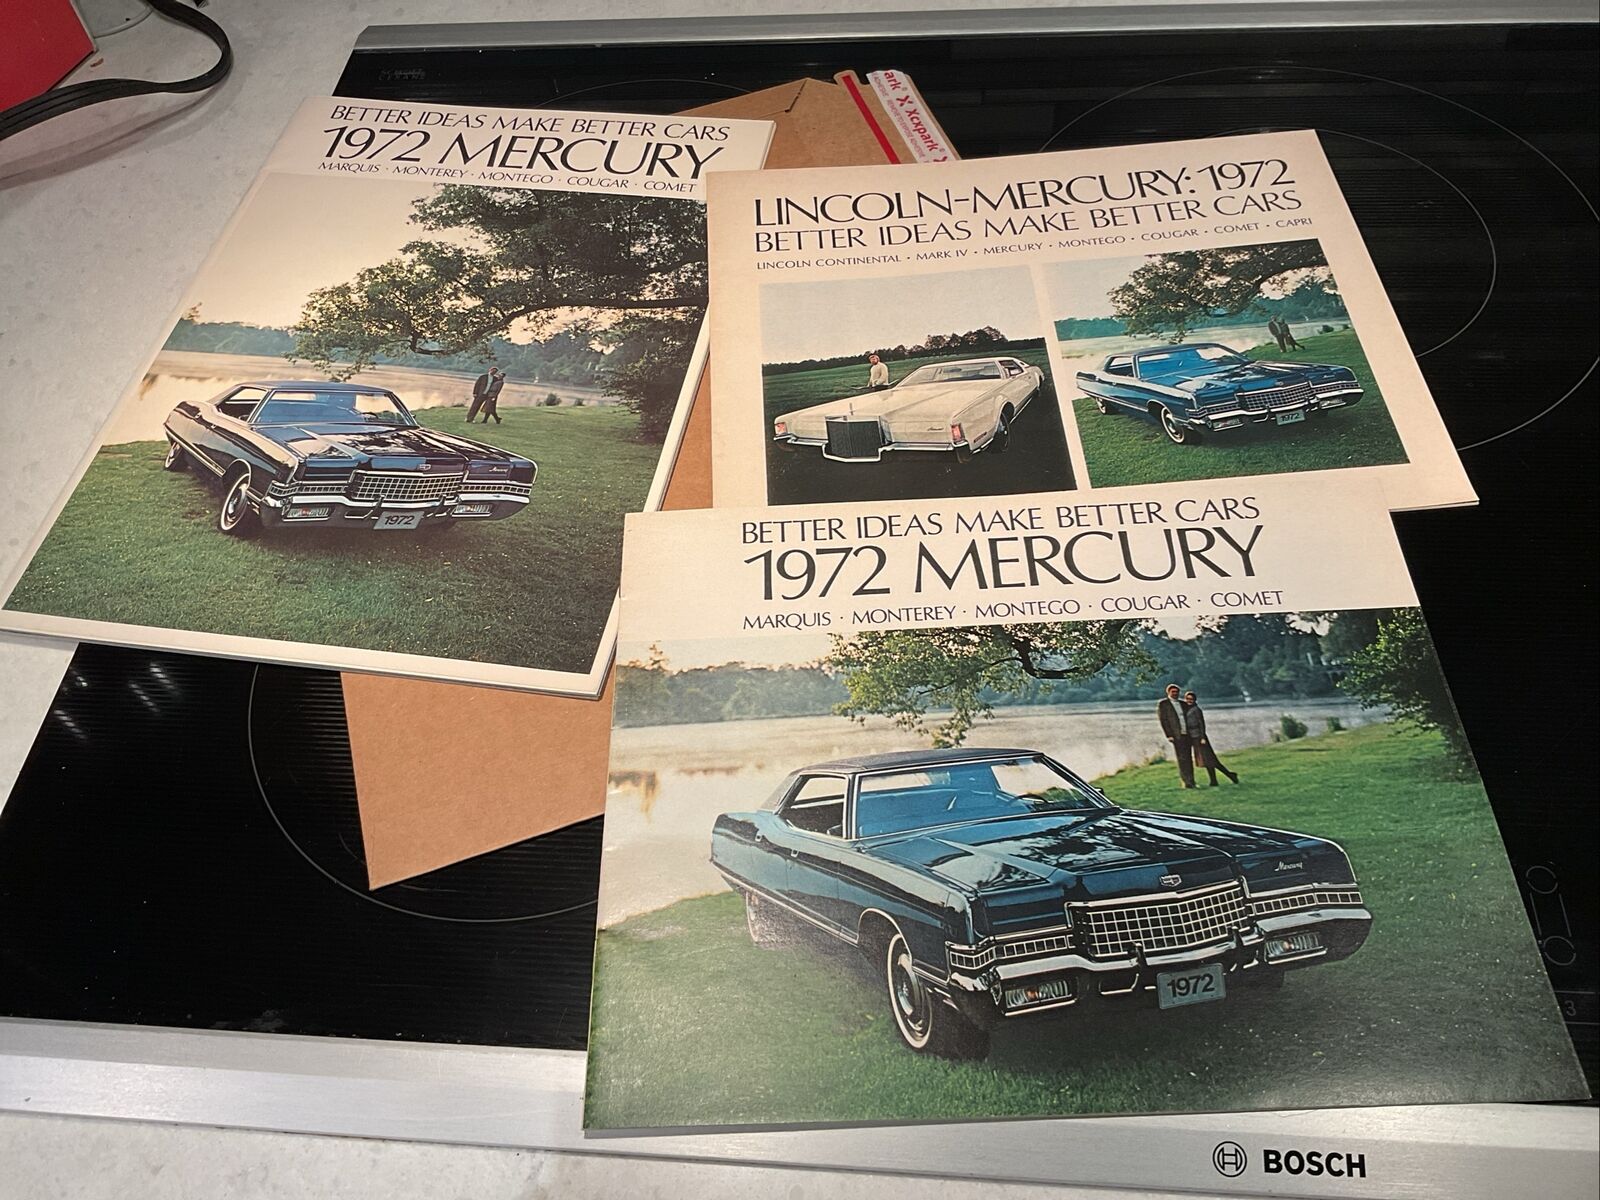 3 1972 Mercury Brochures For MARIO